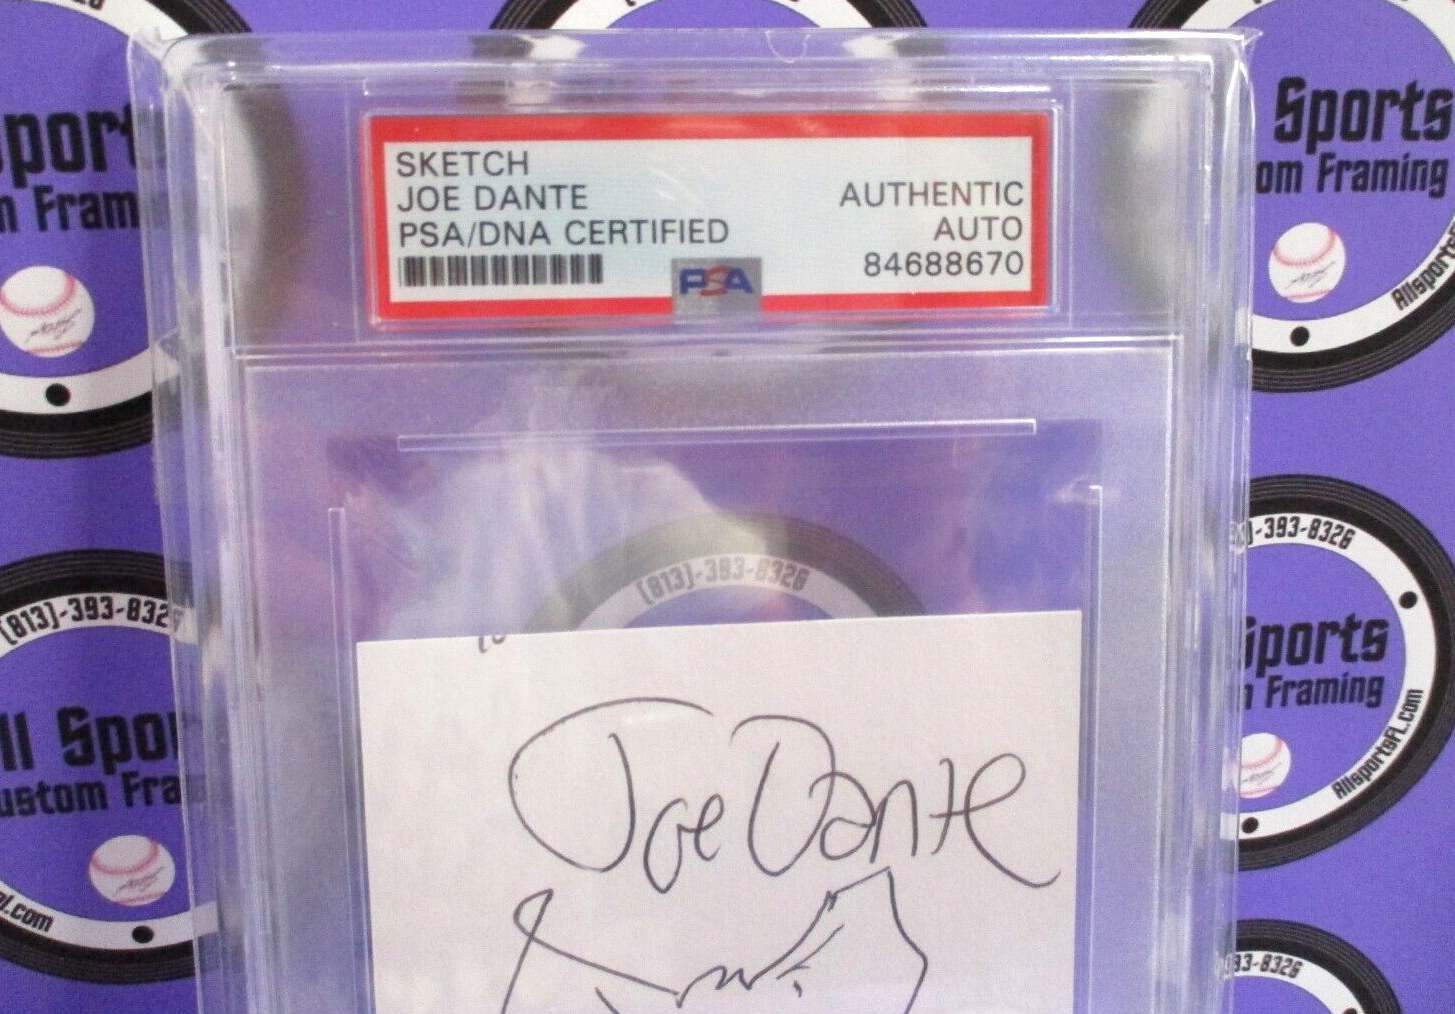 Joe Dante Sketch Autographed Index Card Signed PSA Certified #84688670 Slabbed